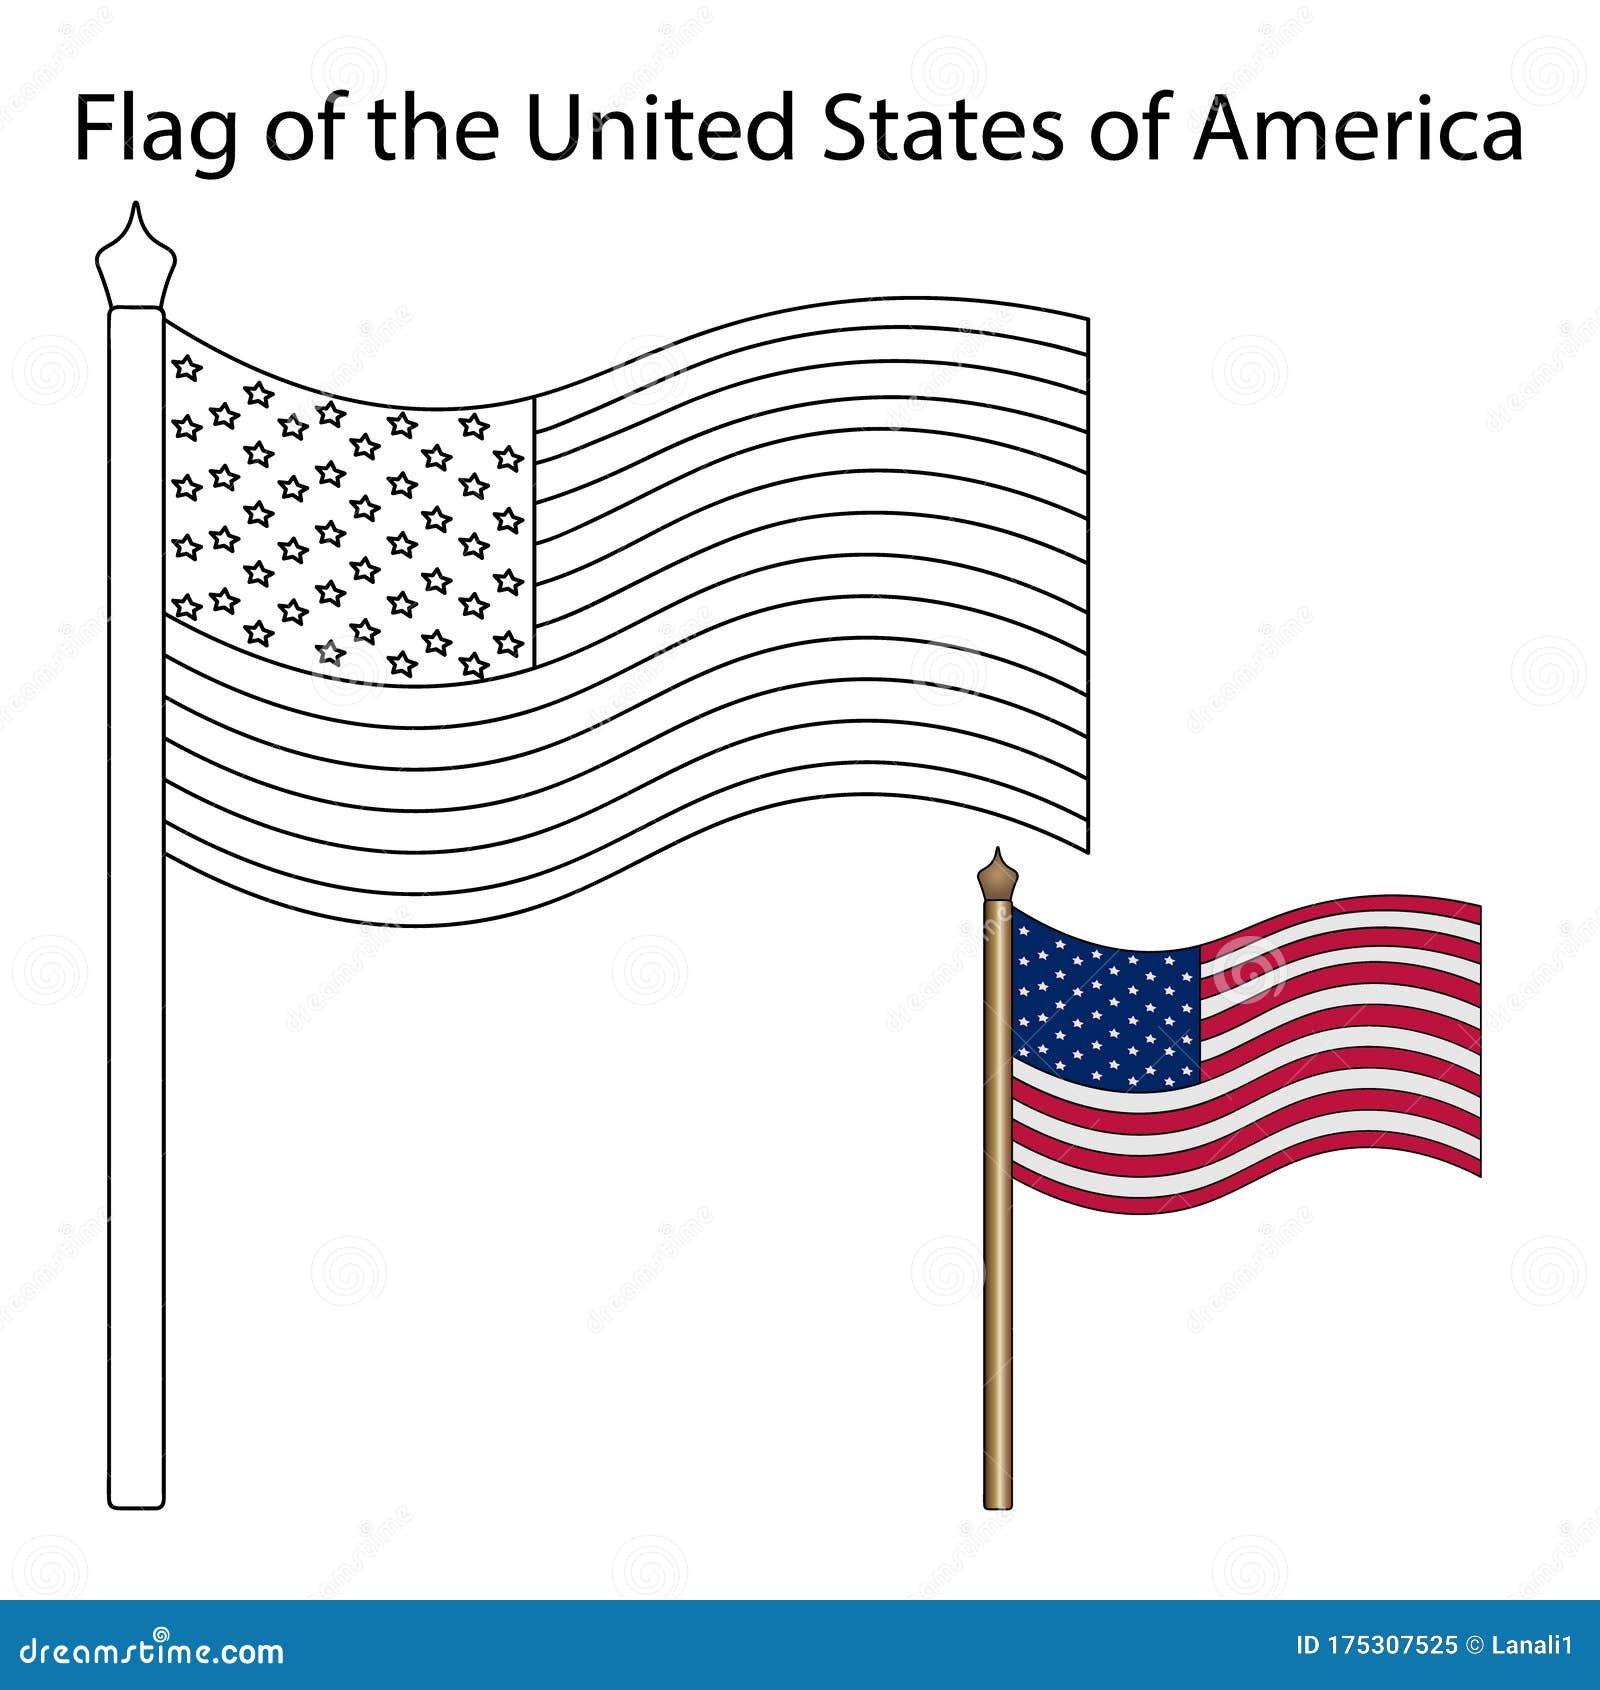 Bandiera usa illustrazione vettoriale temi polici libro da colorare per bambini fondo isolato simbolo nazionale dello stato illustrazione vettoriale